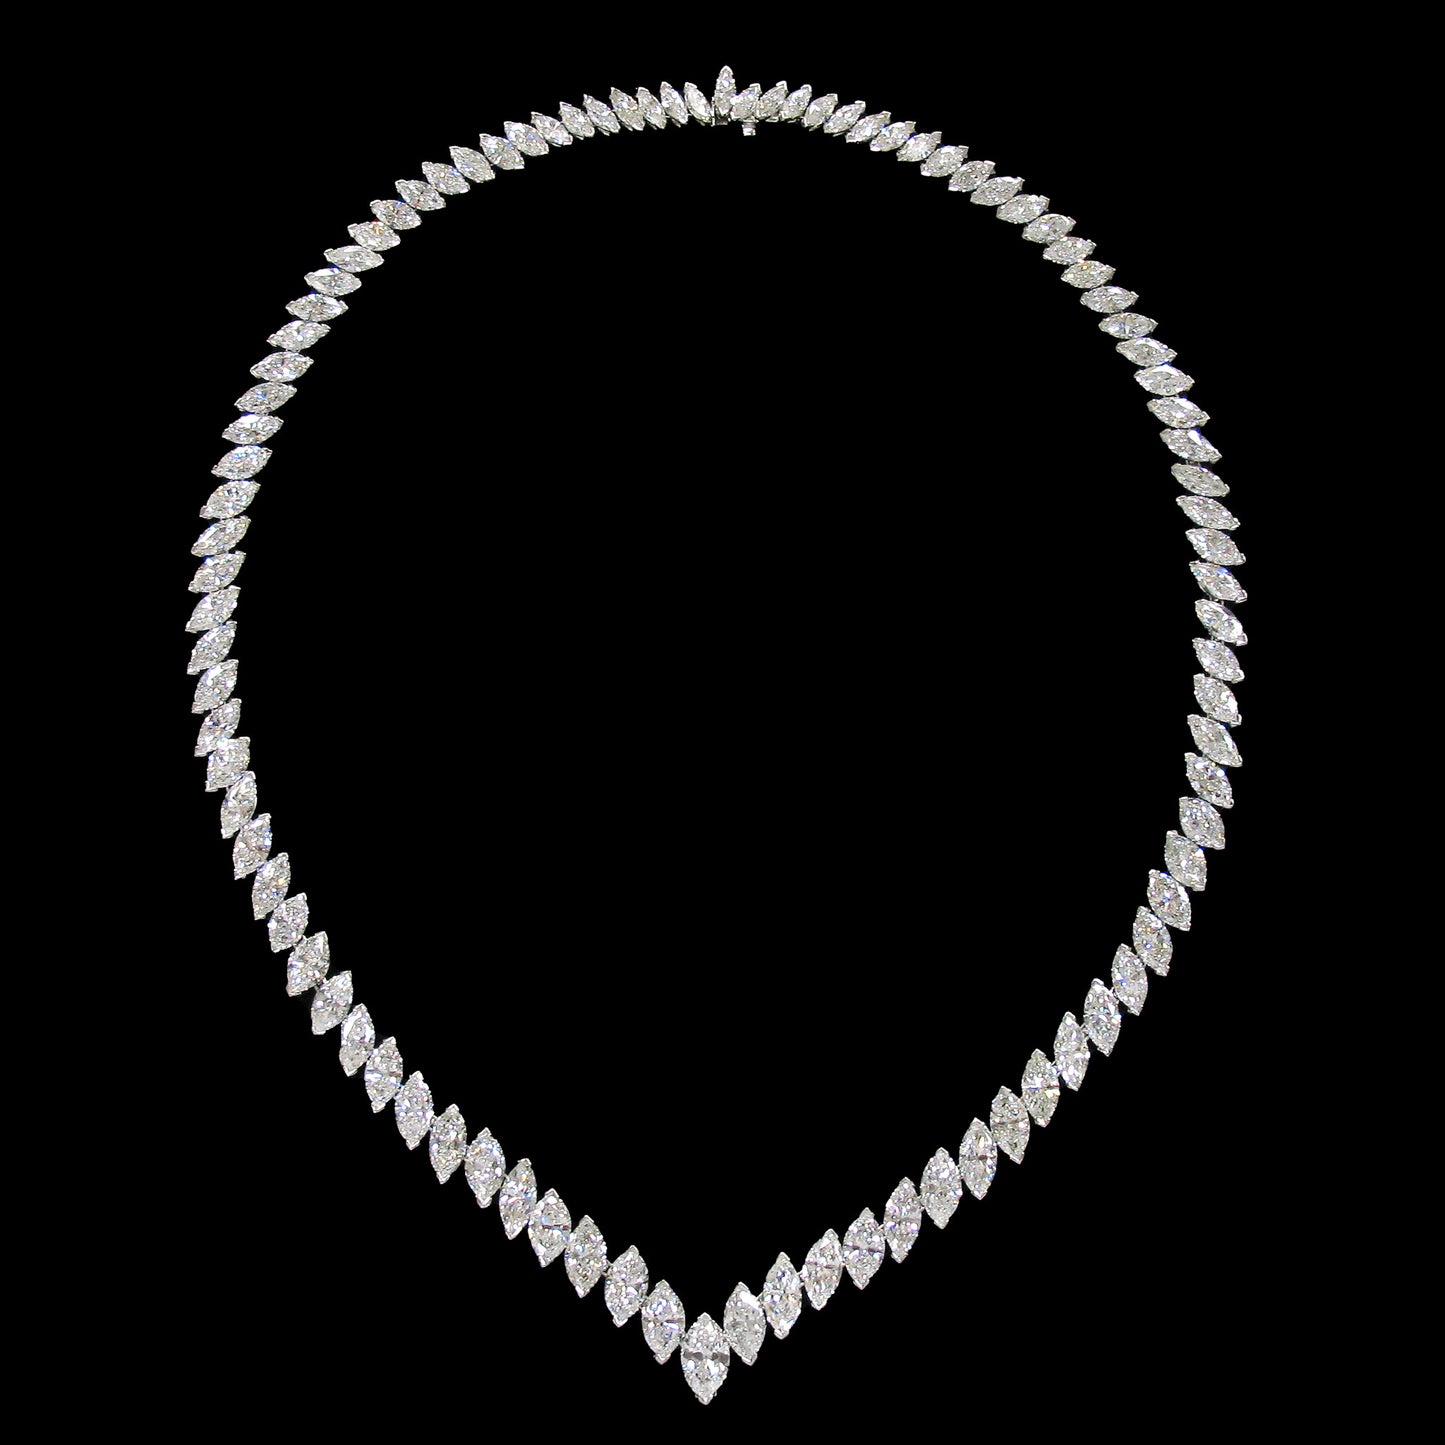 Van Cleef & Arpels 1960s Platinum Diamond Necklace front